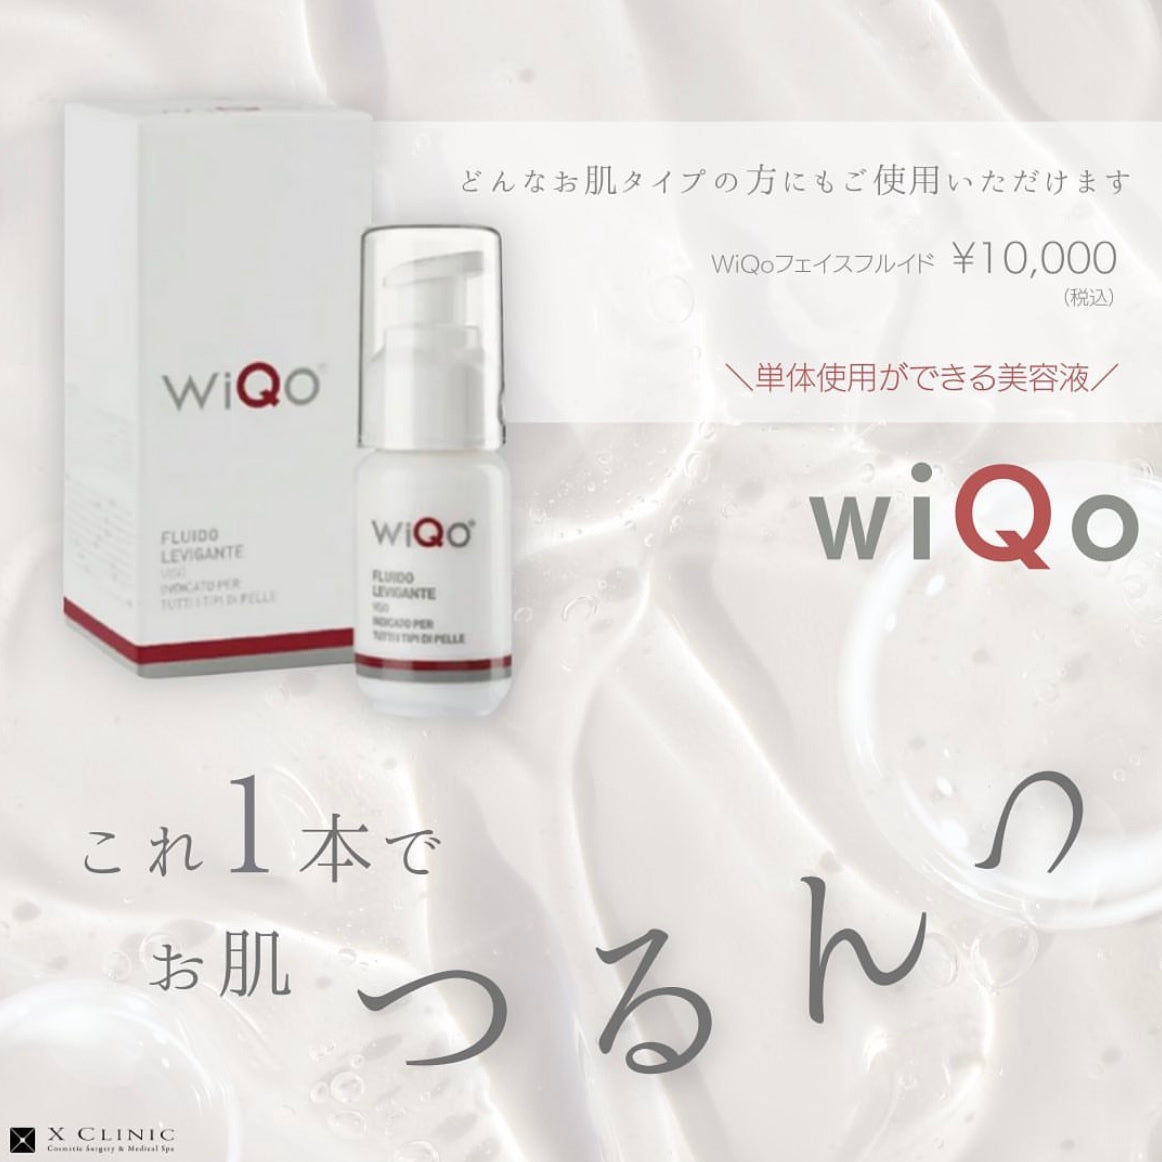 WiQo(ワイコ) フェイスフルイド – X CLINIC online